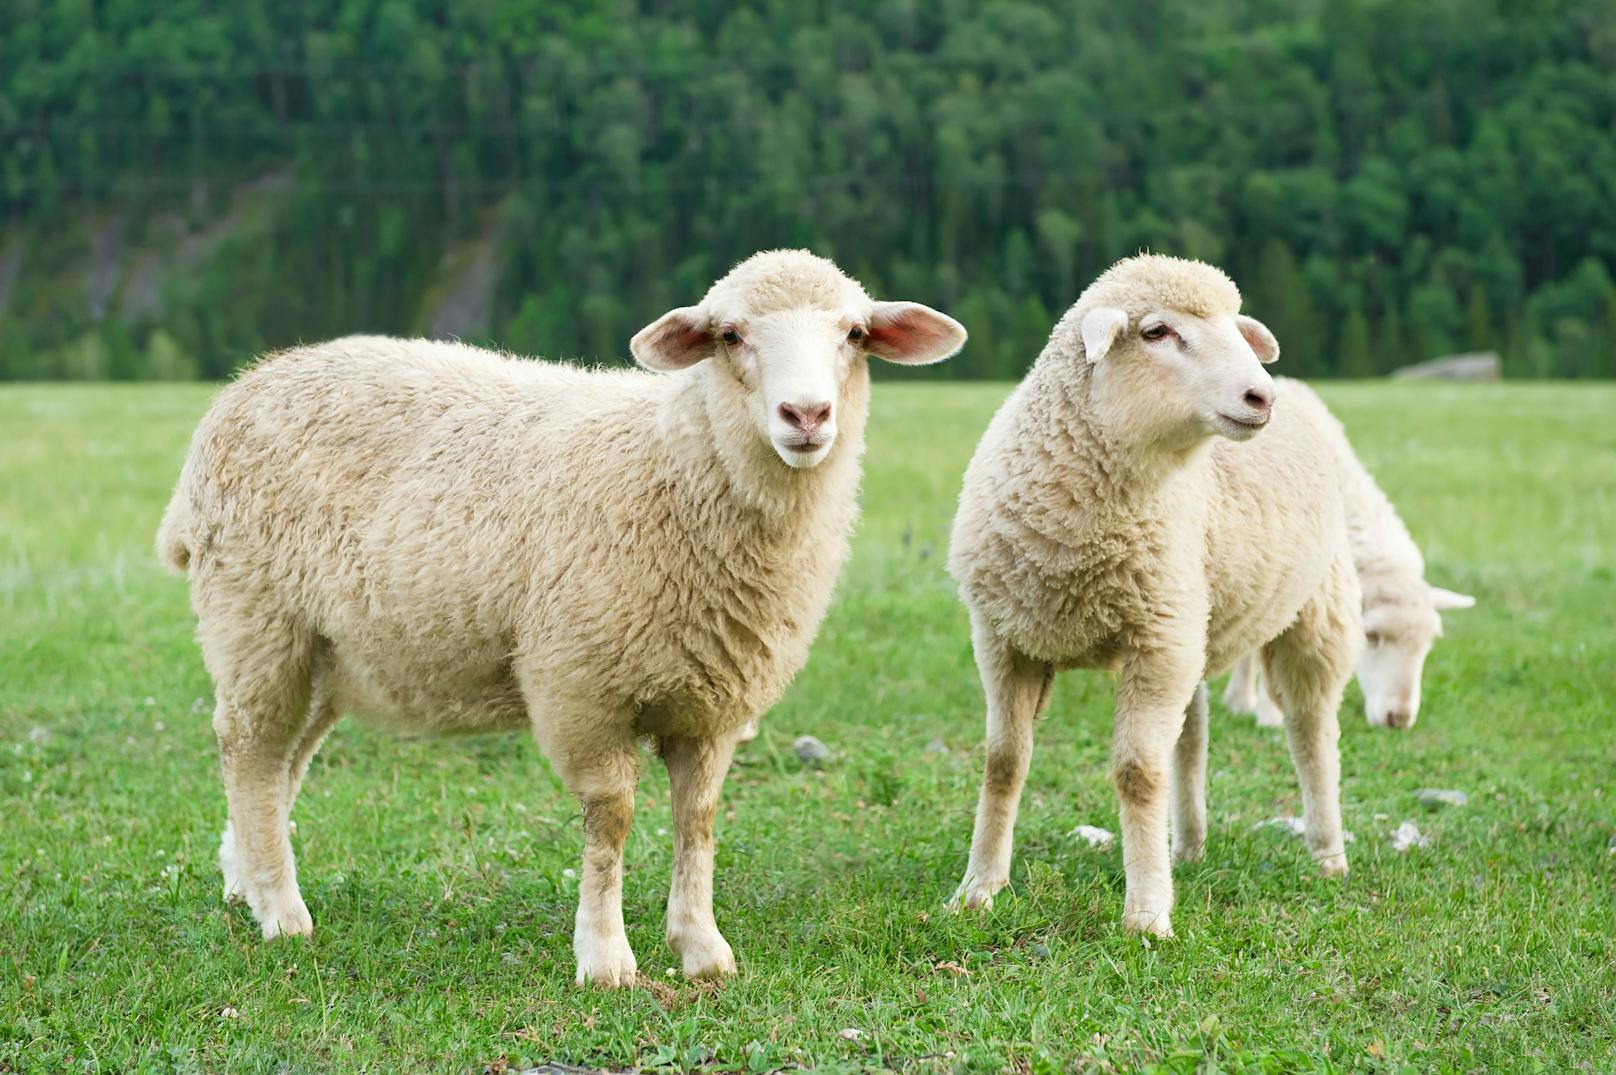 Mann tötet Schaf, legt Kadaver bei Spielplatz ab